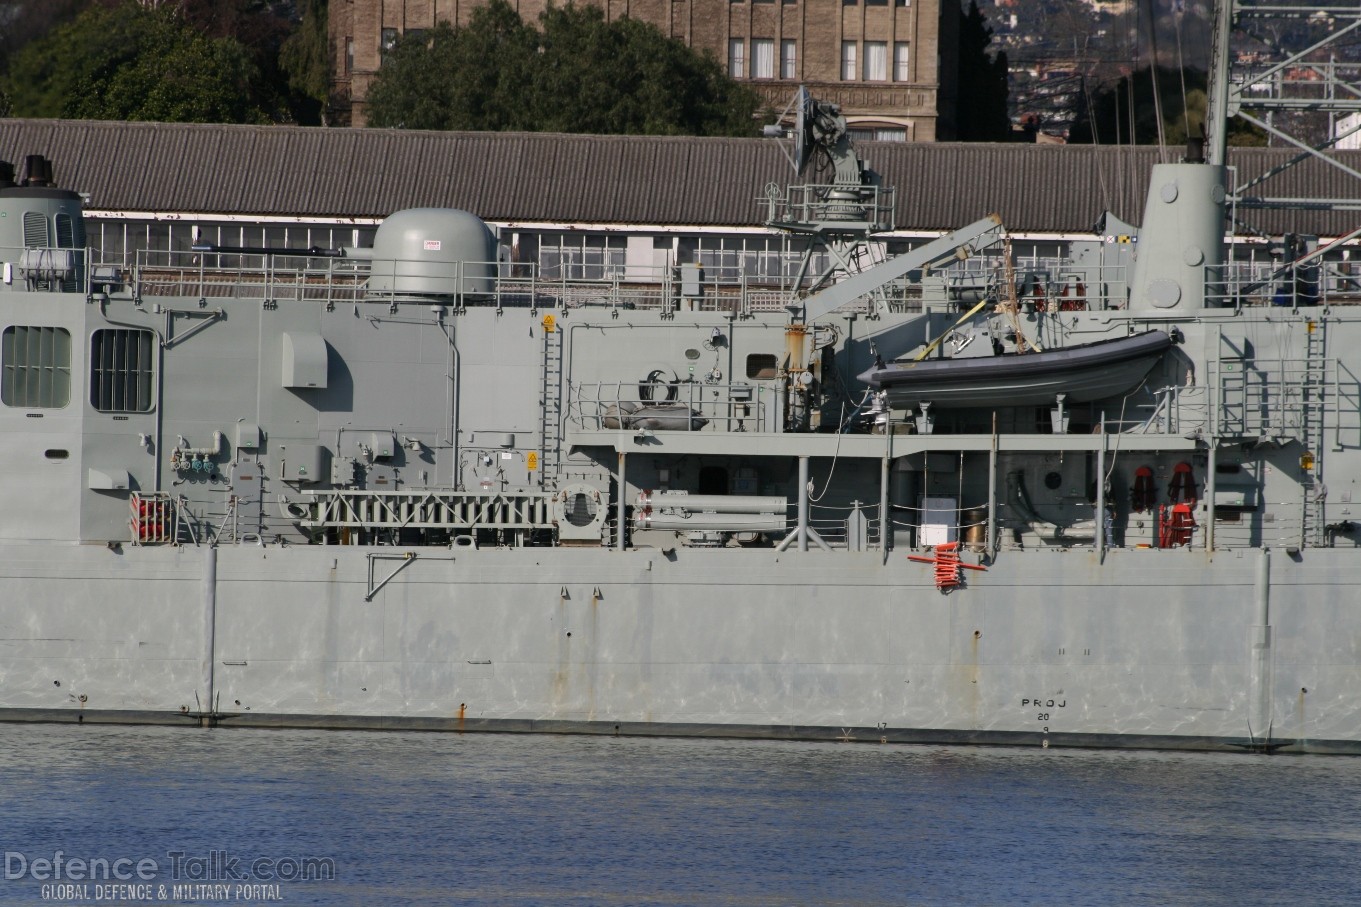 HMAS Melbourne FFG 05 in Hobart August 2007